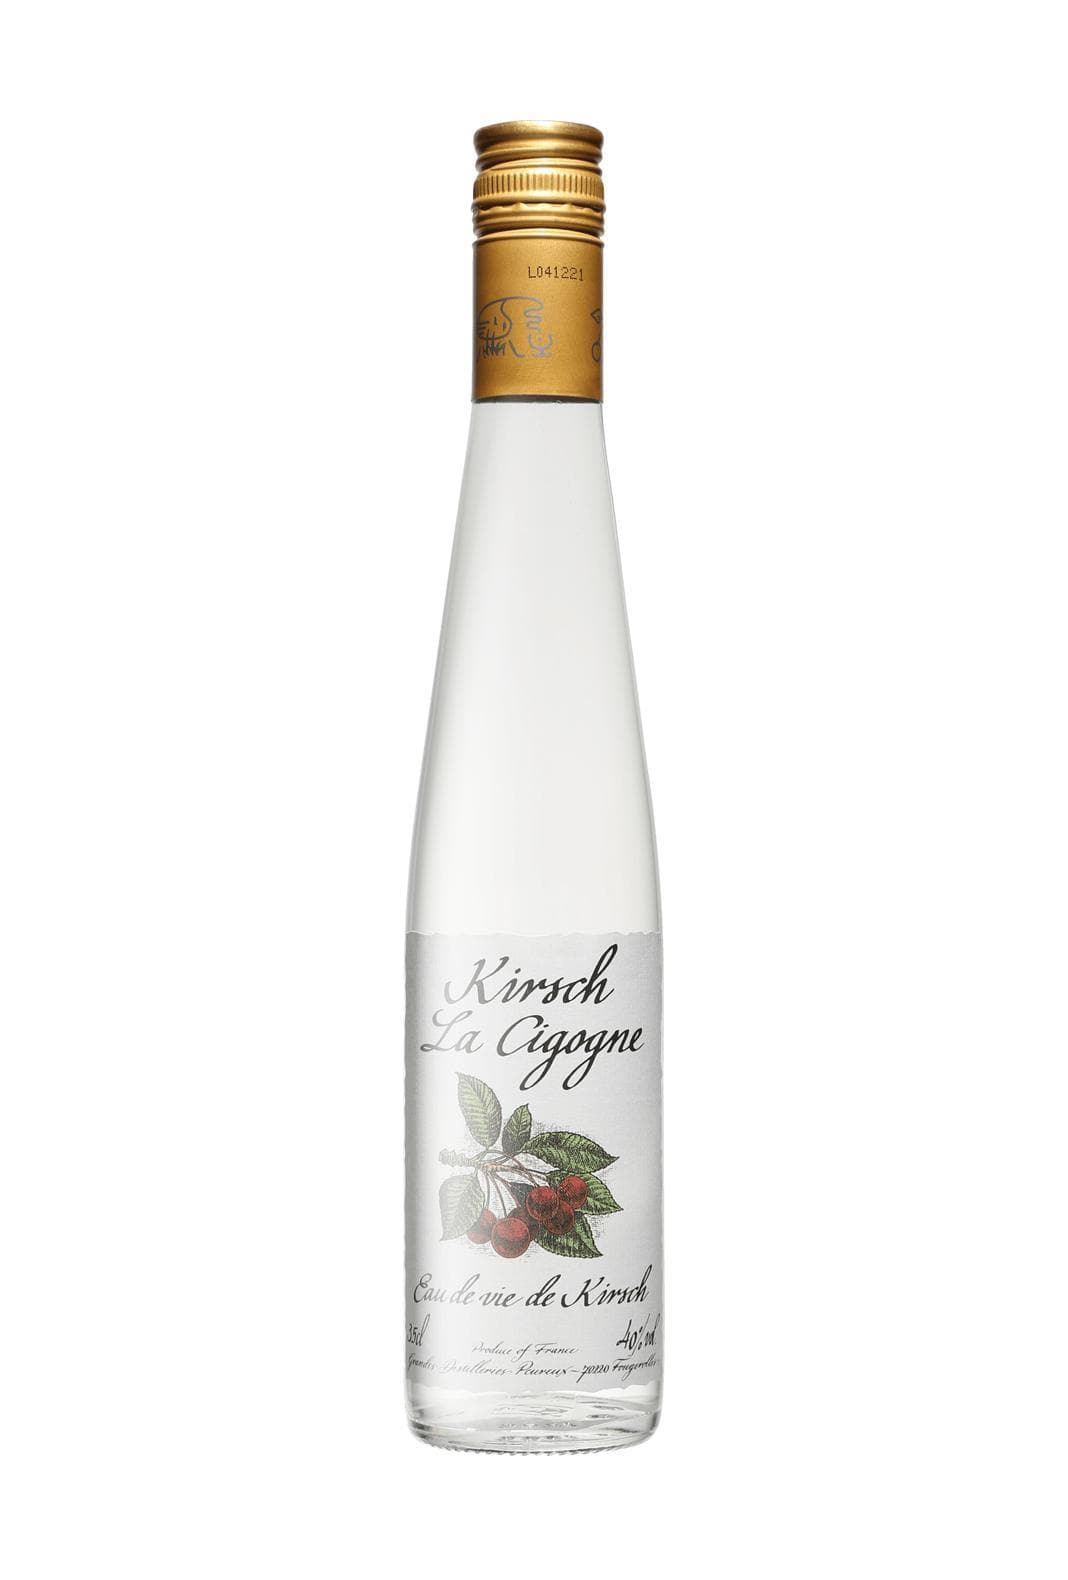 Peureux 'La Cigogne' Eau de Vie Kirsch (Cherry spirit) 40% 350ml | Liquor & Spirits | Shop online at Spirits of France